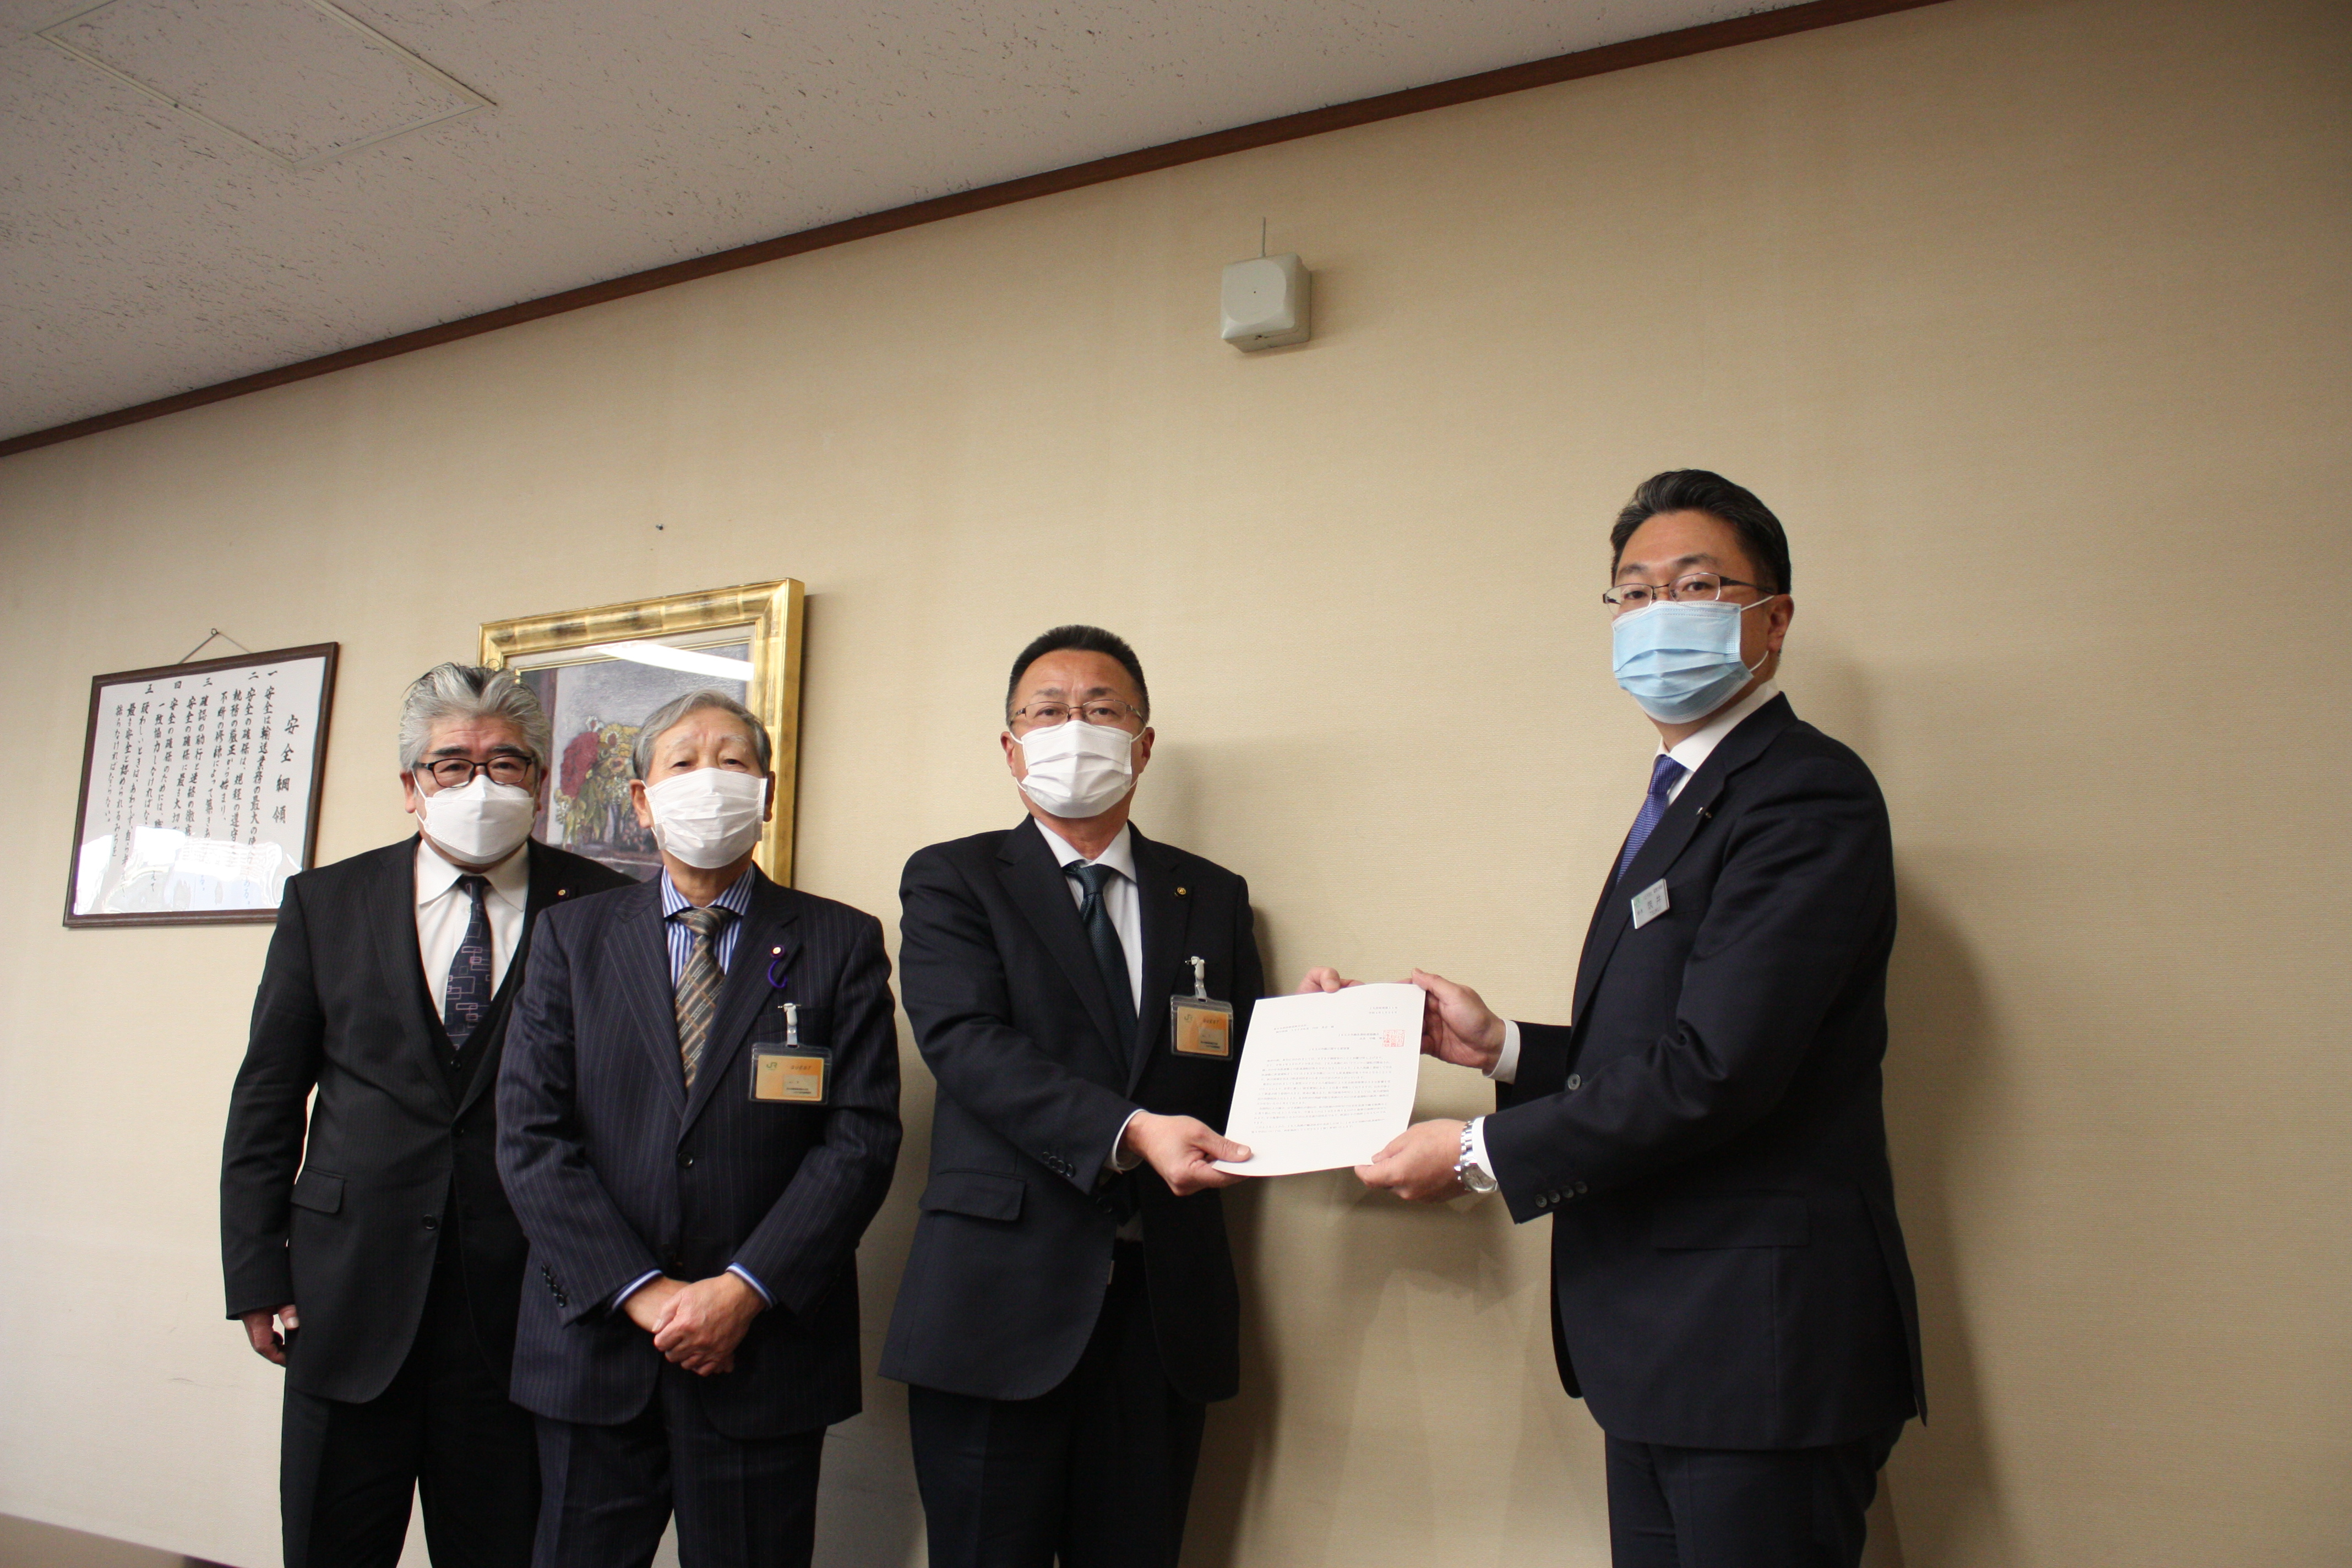 東日本旅客鉄道株式会社執行役員八王子支社長に対して、要望書を提出しました。